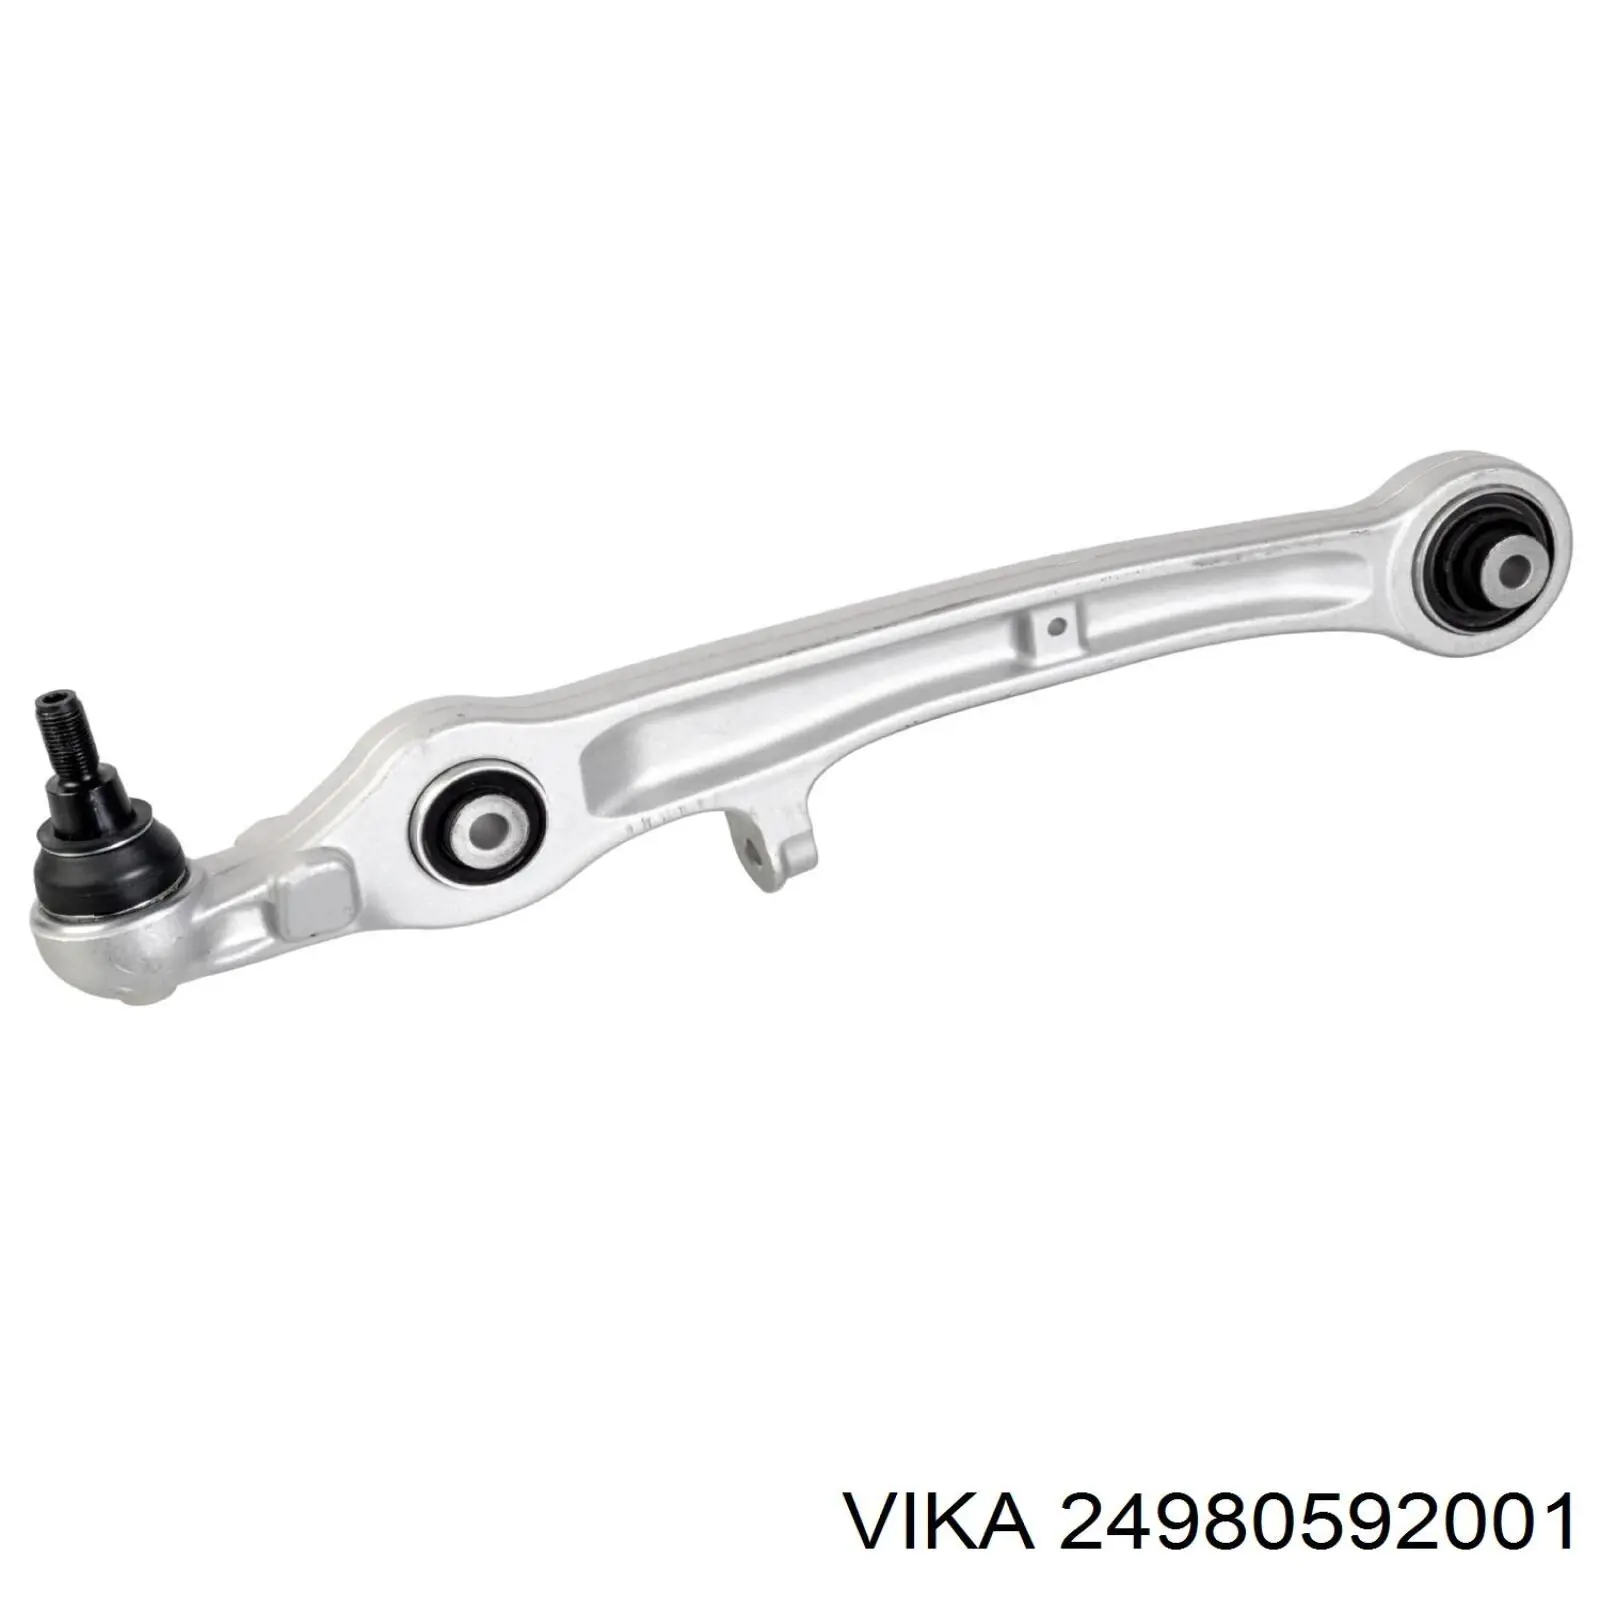 24980592001 Vika kit de brazo de suspension delantera